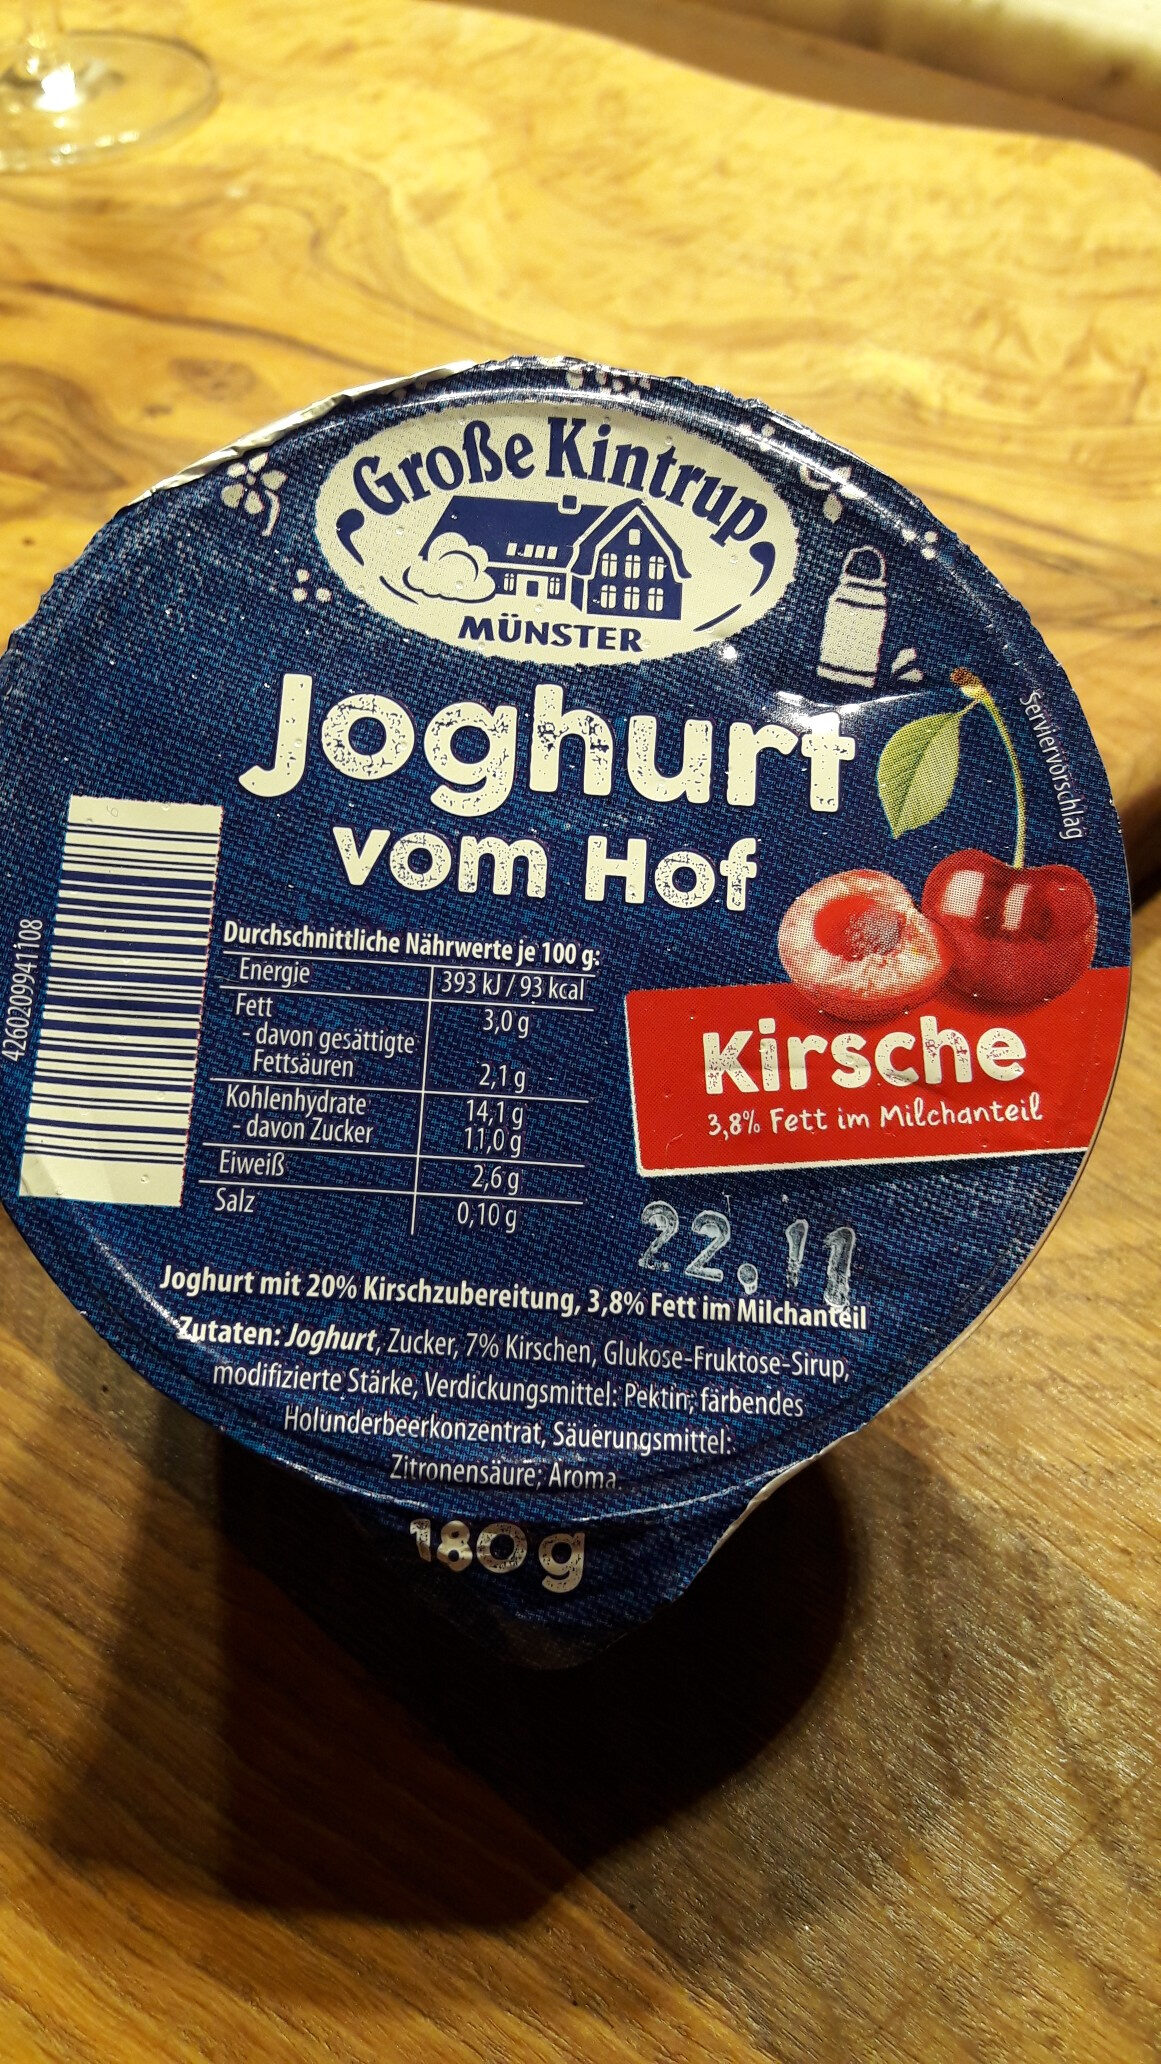 Joghurt vom Hof - Product - de